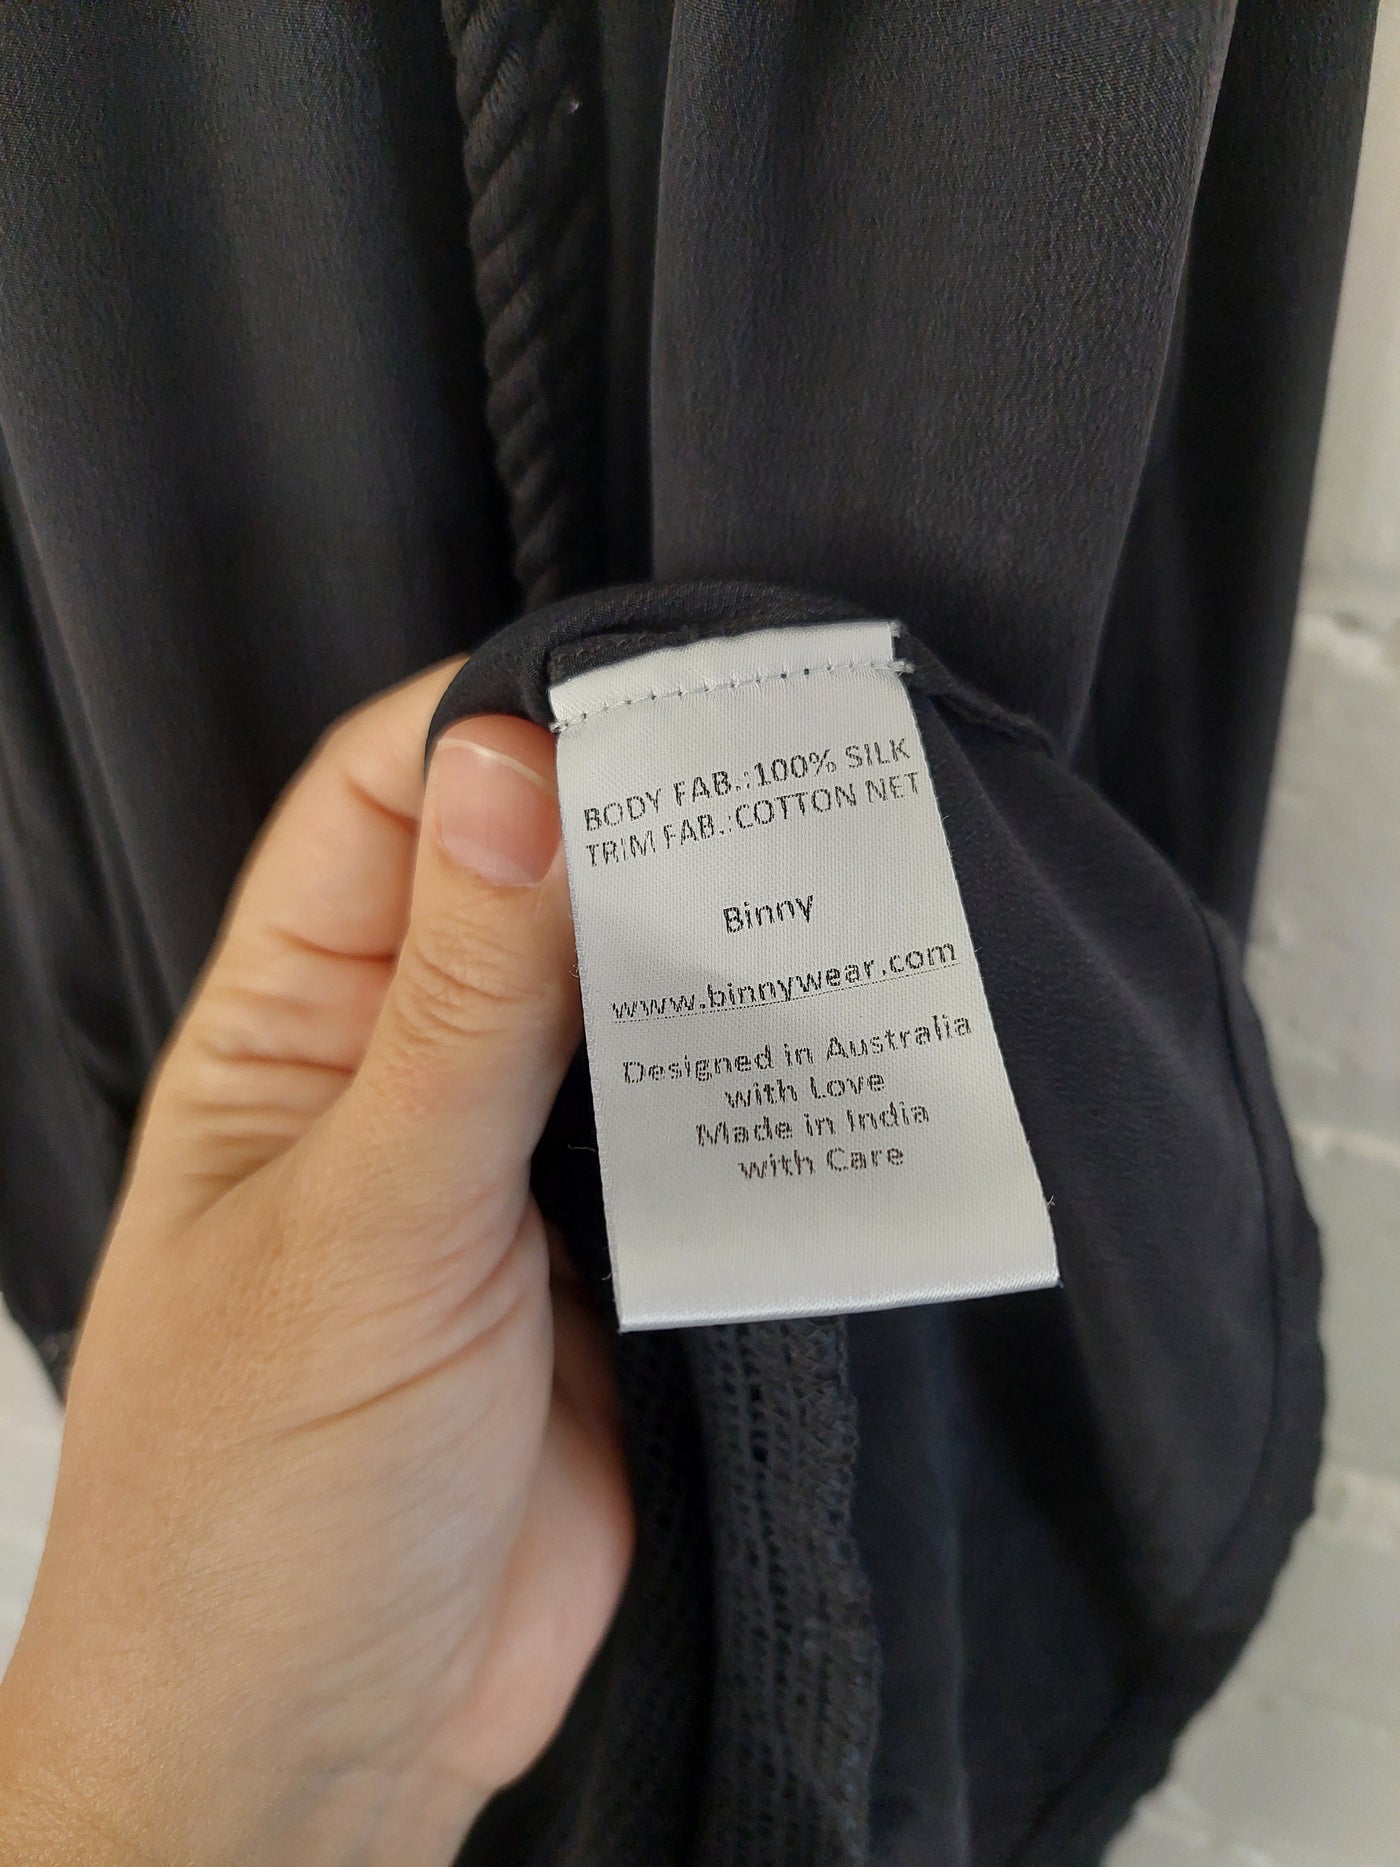 Binny Black Silk Maxi Dress with Cotton Net Trim, Size 10